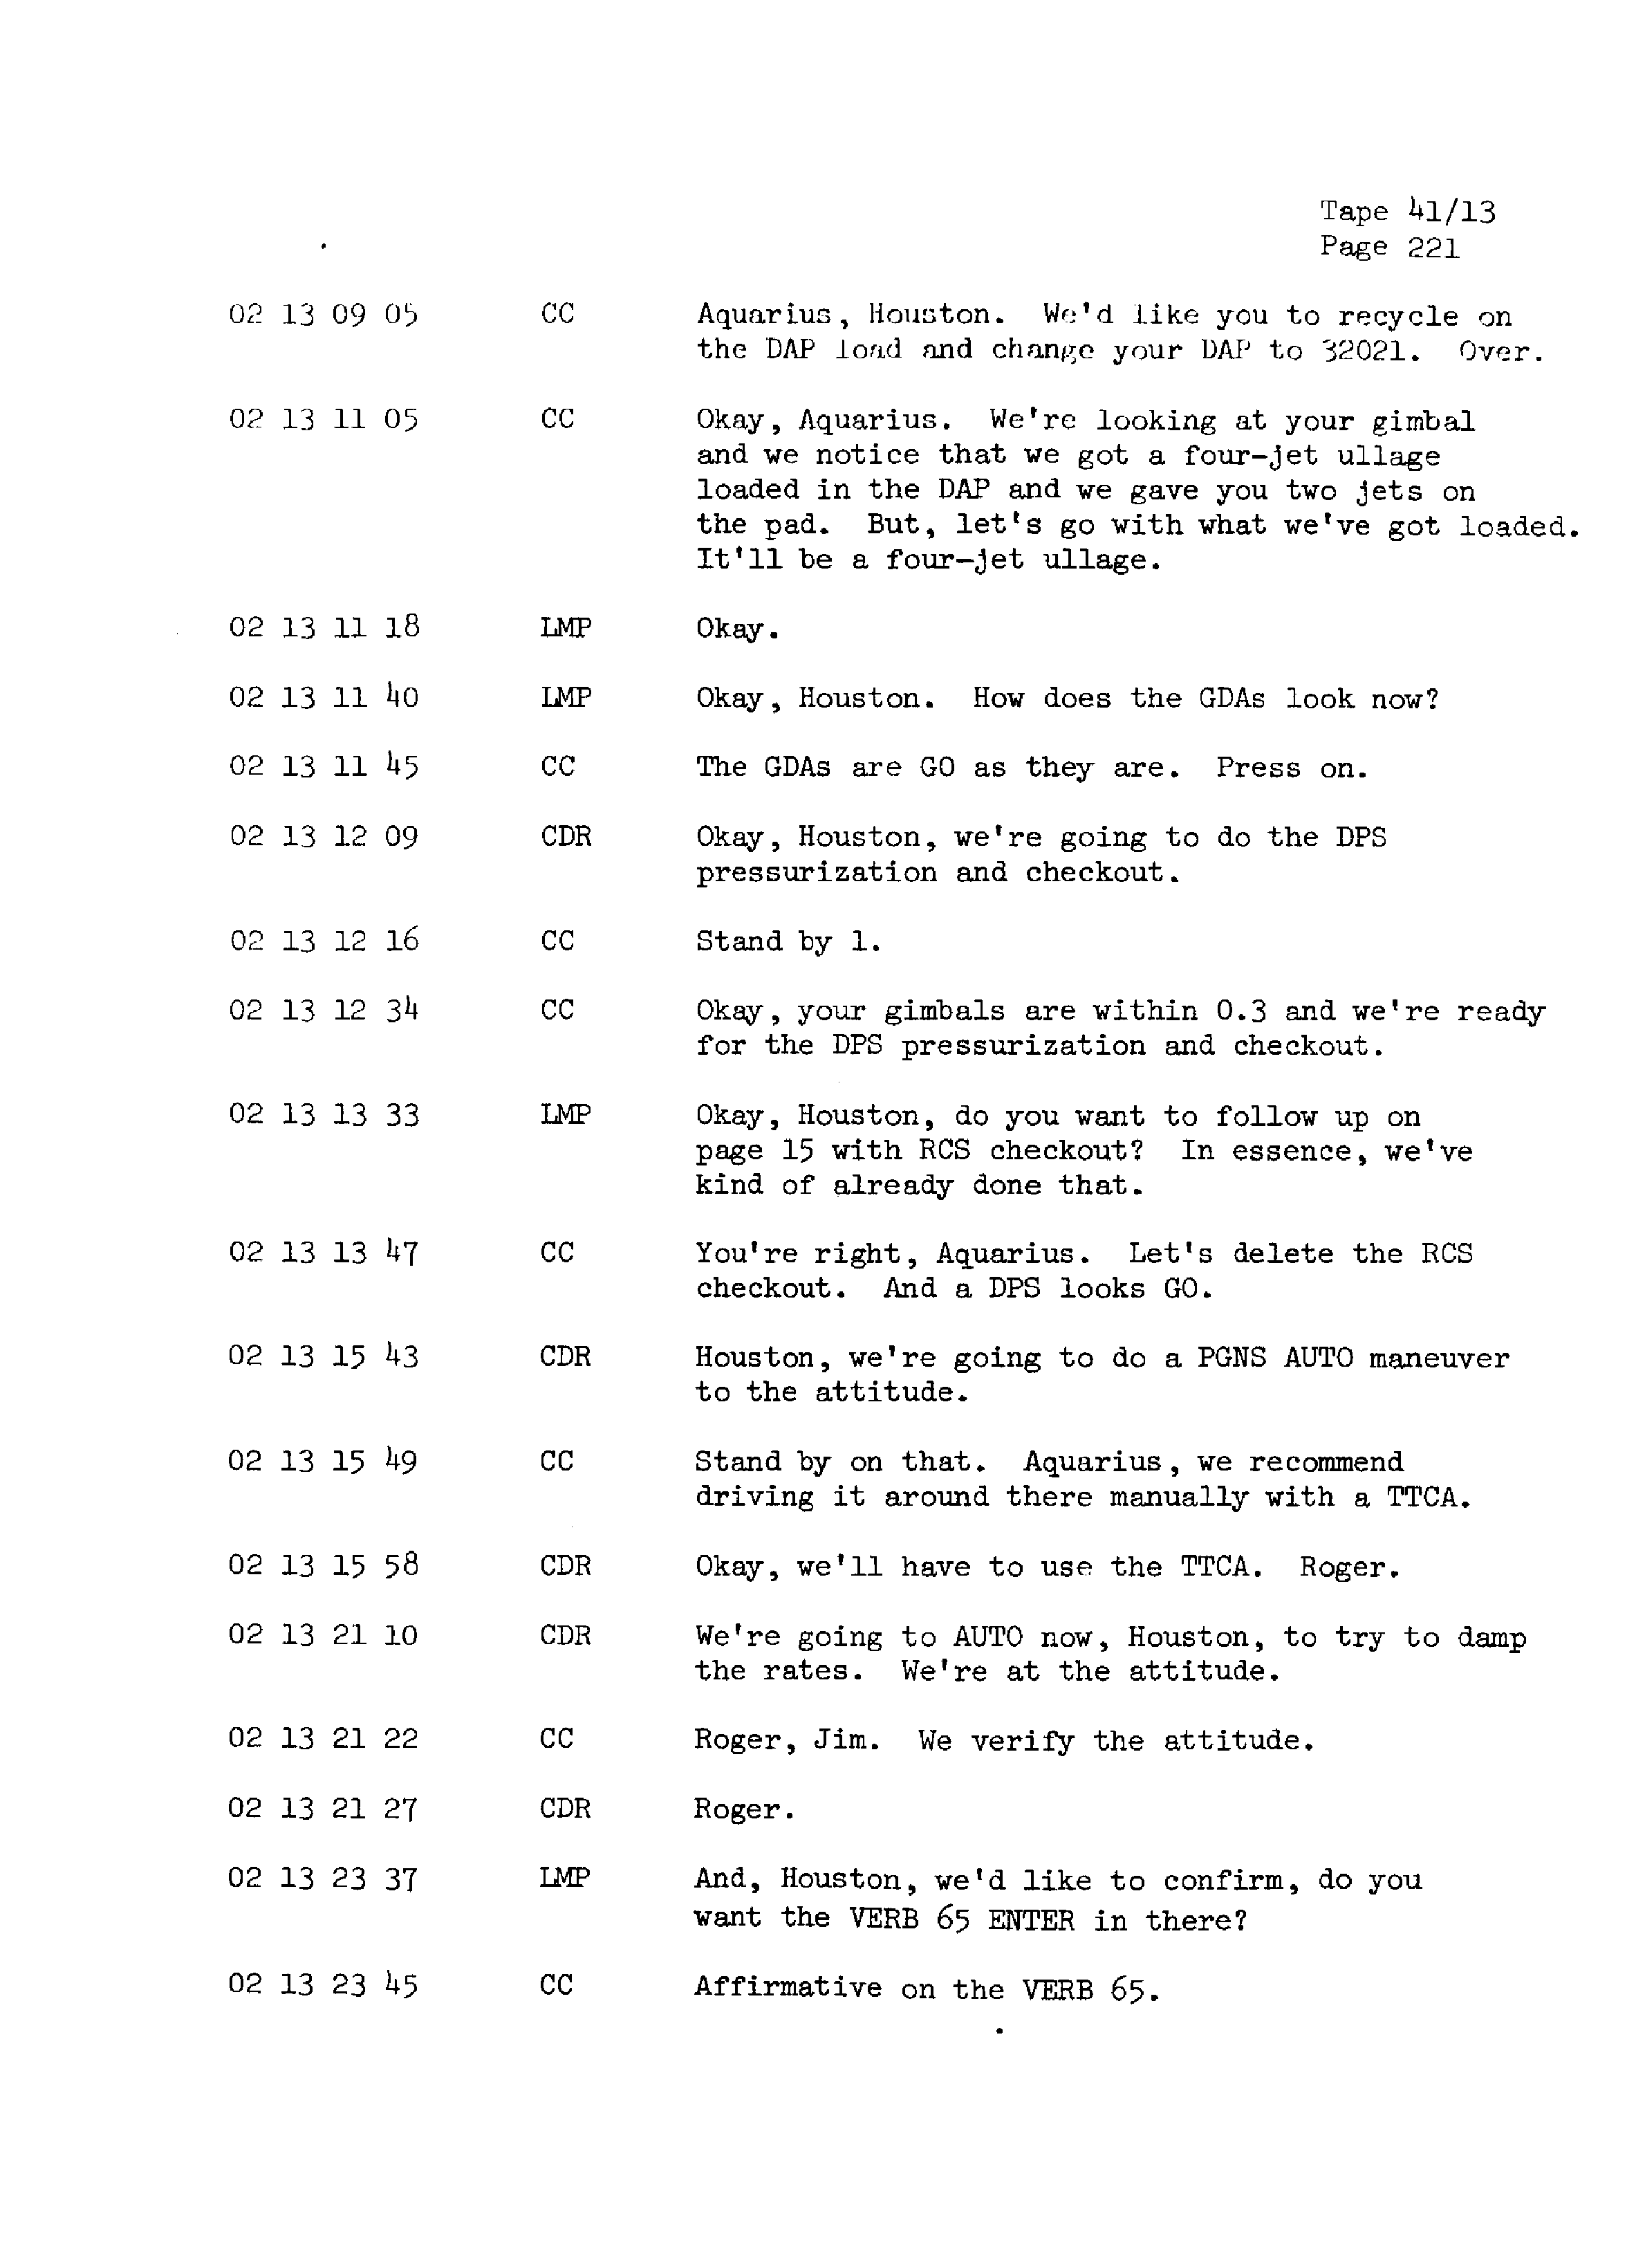 Page 228 of Apollo 13’s original transcript